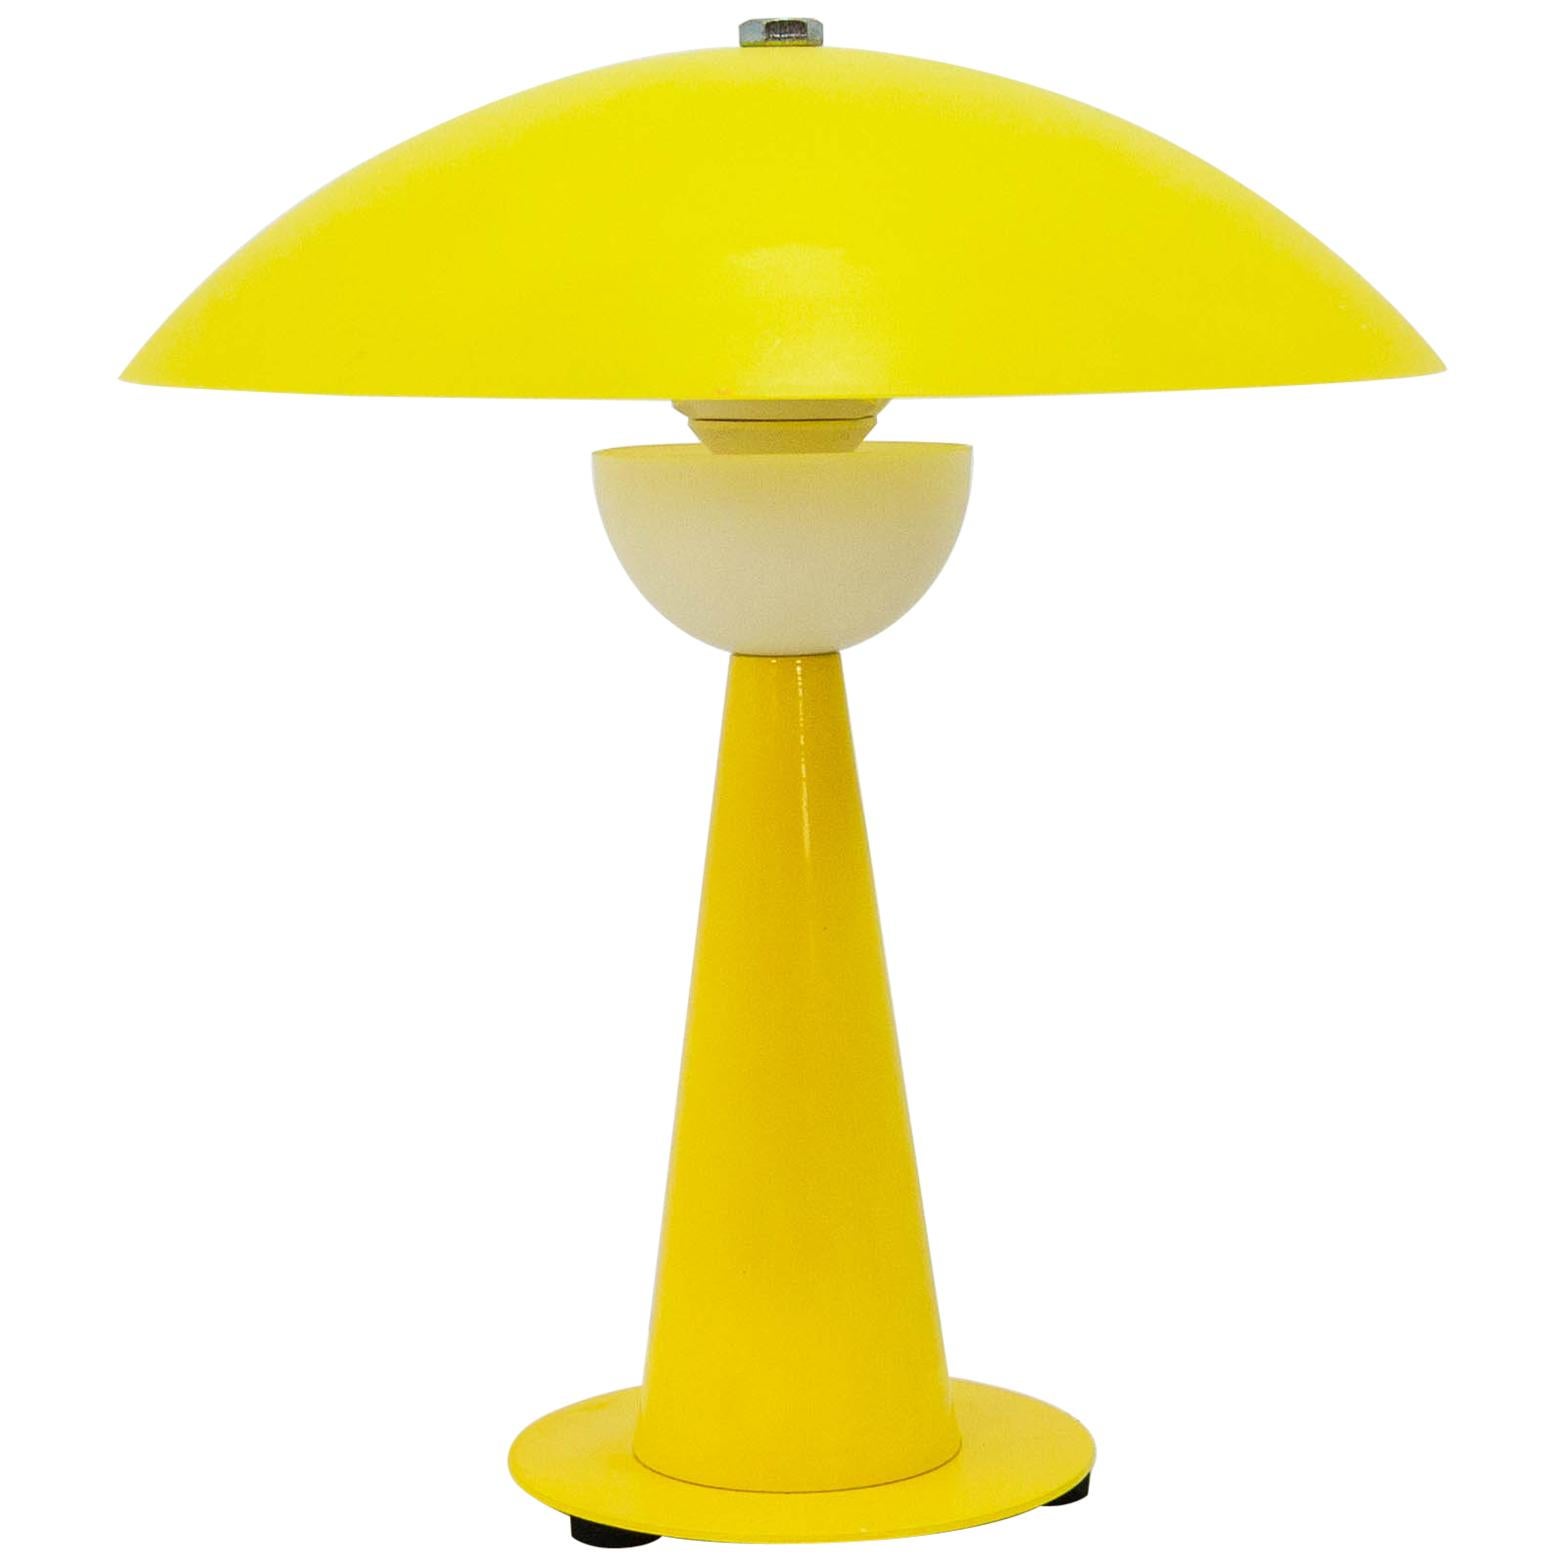 Aluminor France Bright Yellow Table Lamp